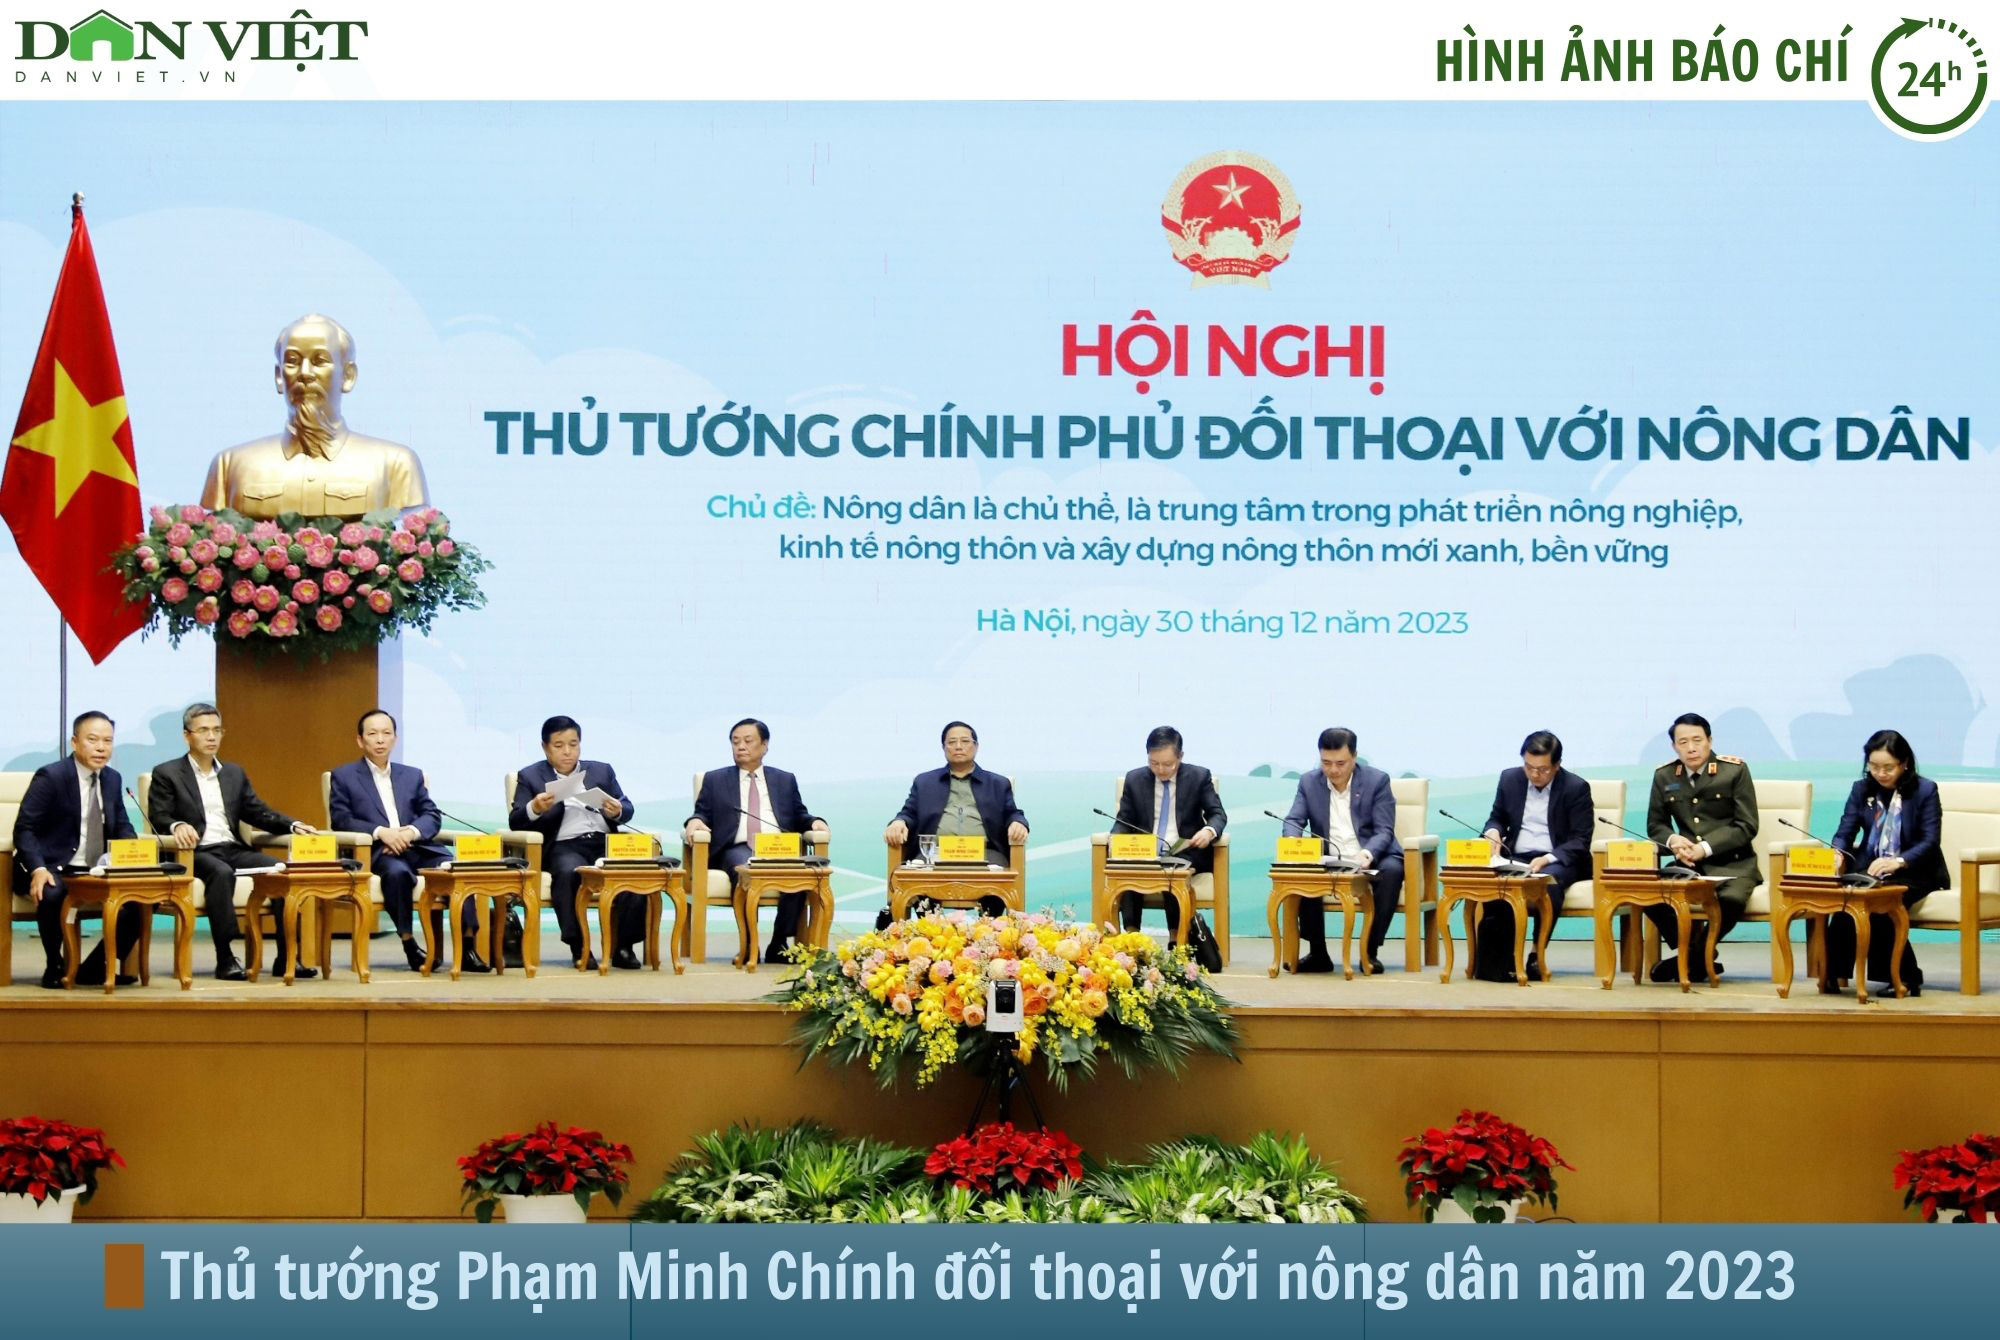 Hình ảnh báo chí 24h: Thủ tướng Phạm Minh Chính đối thoại với nông dân năm 2023 - Ảnh 1.